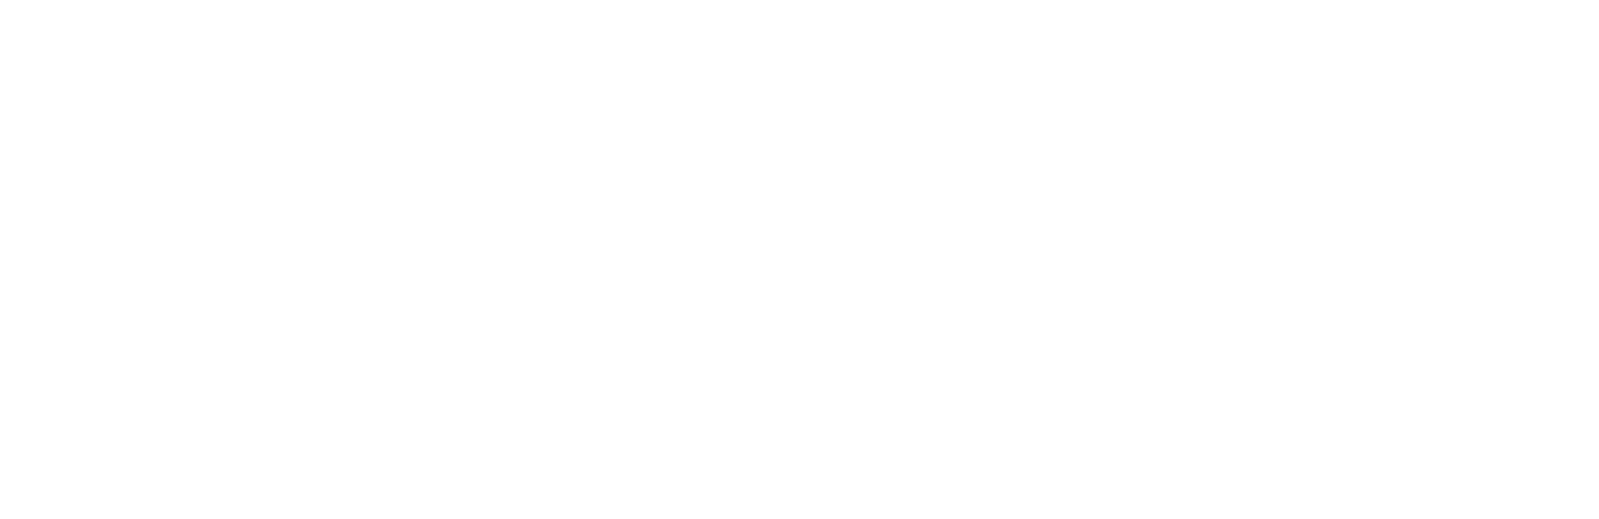 Visa logo pour fonds sombres (PNG transparent)